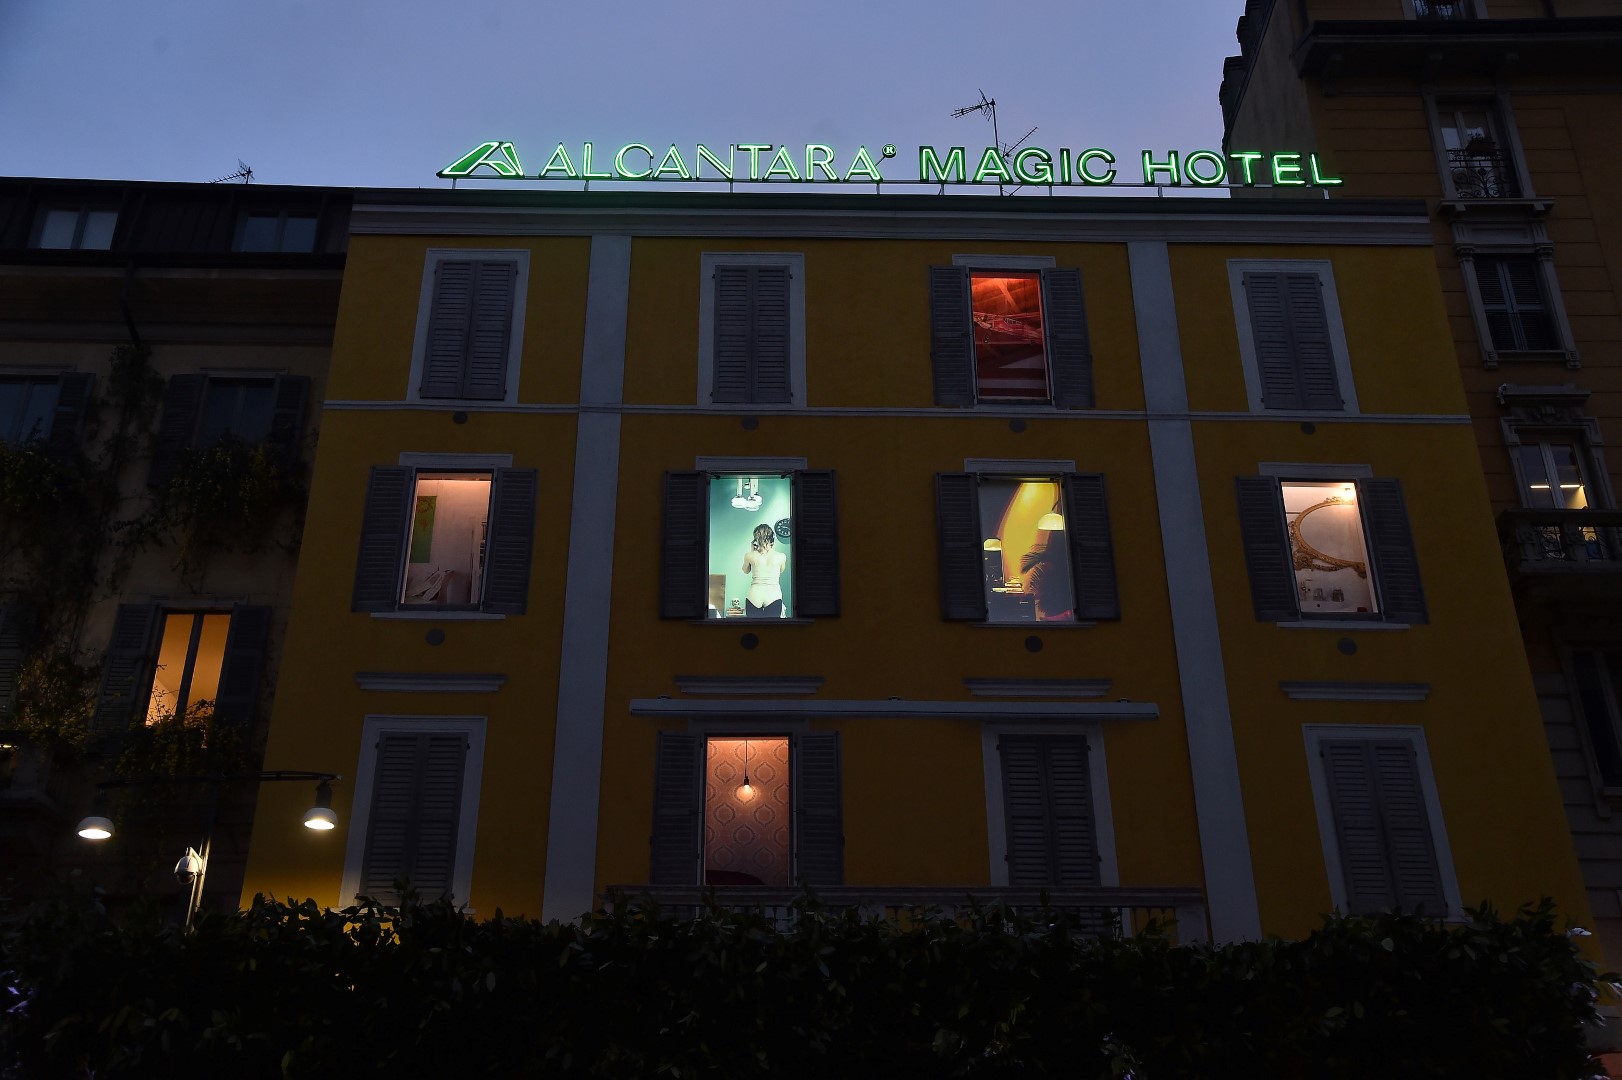 Fuorisalone 2016 Milano: inaugurato l’Alcantara Magic Hotel in Corso Como, video e foto